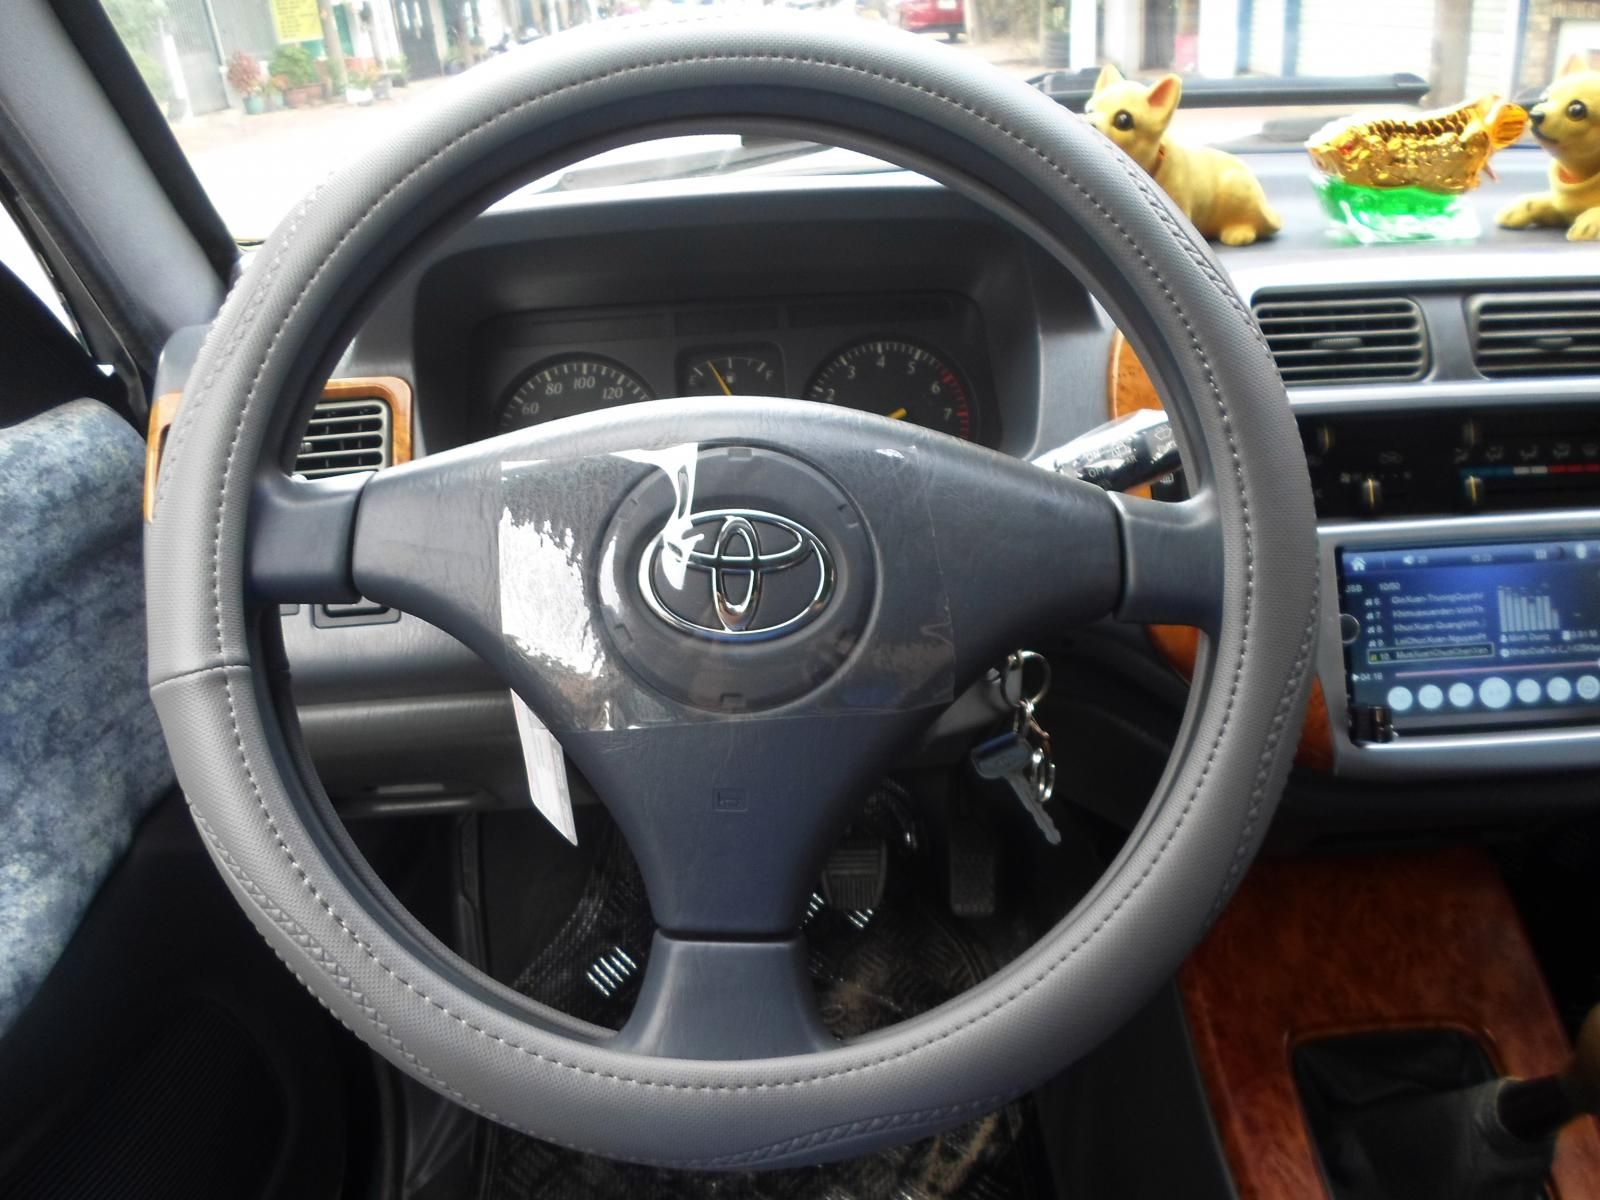 Toyota Zace 2005 - Cao cấp GL - Xe mới như xe hãng - 1 đời chủ zin 100%